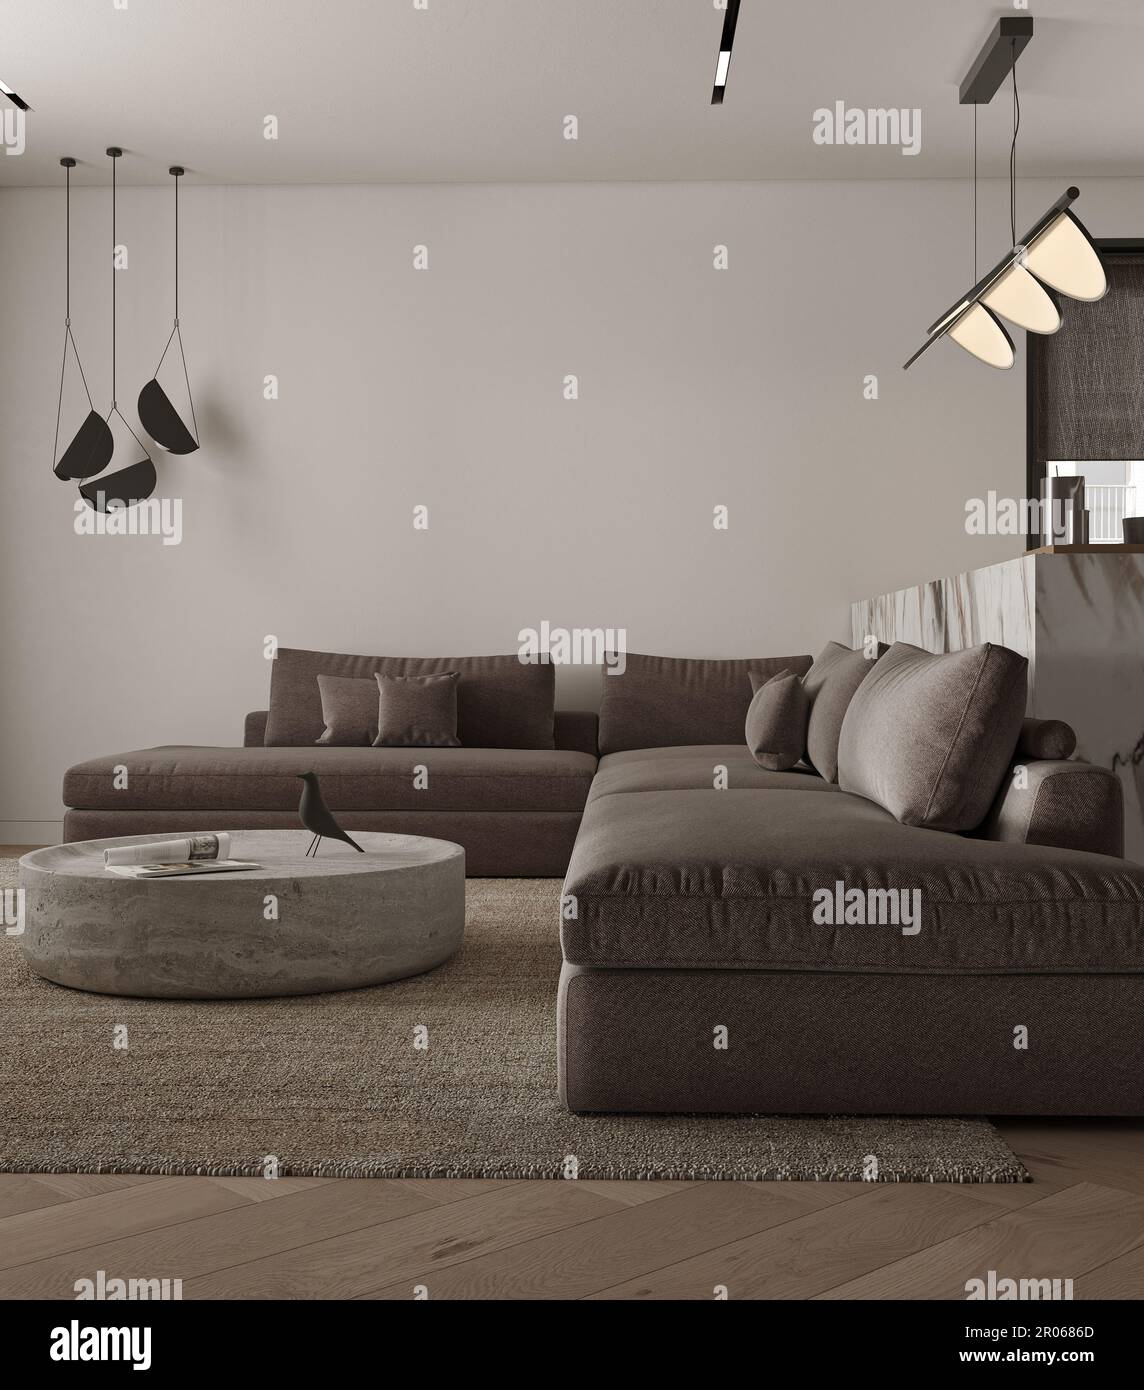 Simple classique minimalisme intérieur blanc gris salon avec table en pierre, lampe, plafonnier et fauteuil. Maquette d'un mur vide. 3d rendu. Élevée Banque D'Images